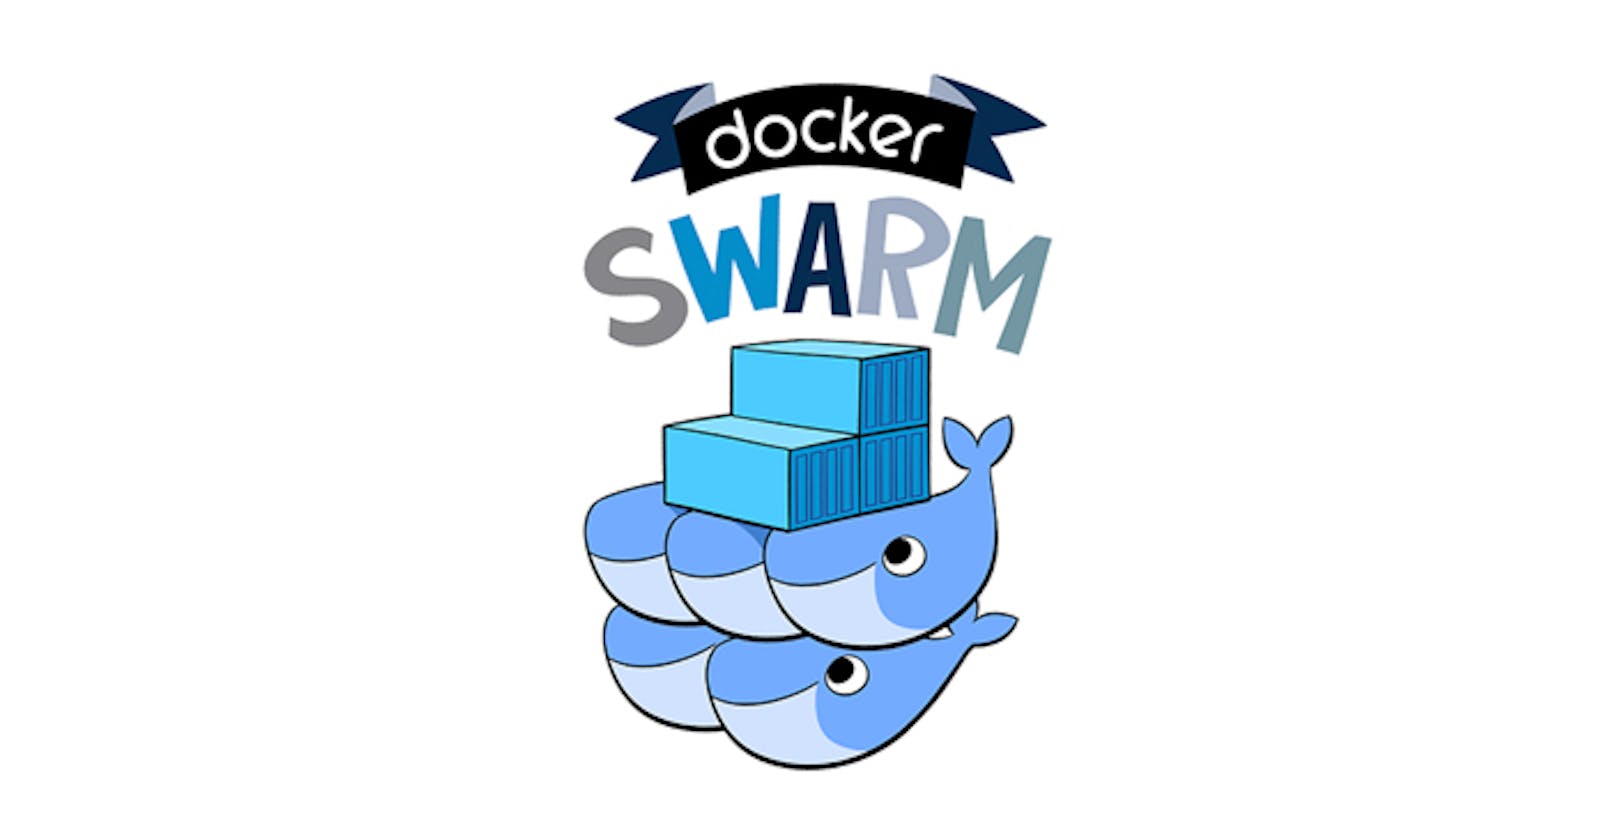 Day 21 - Docker Swarm